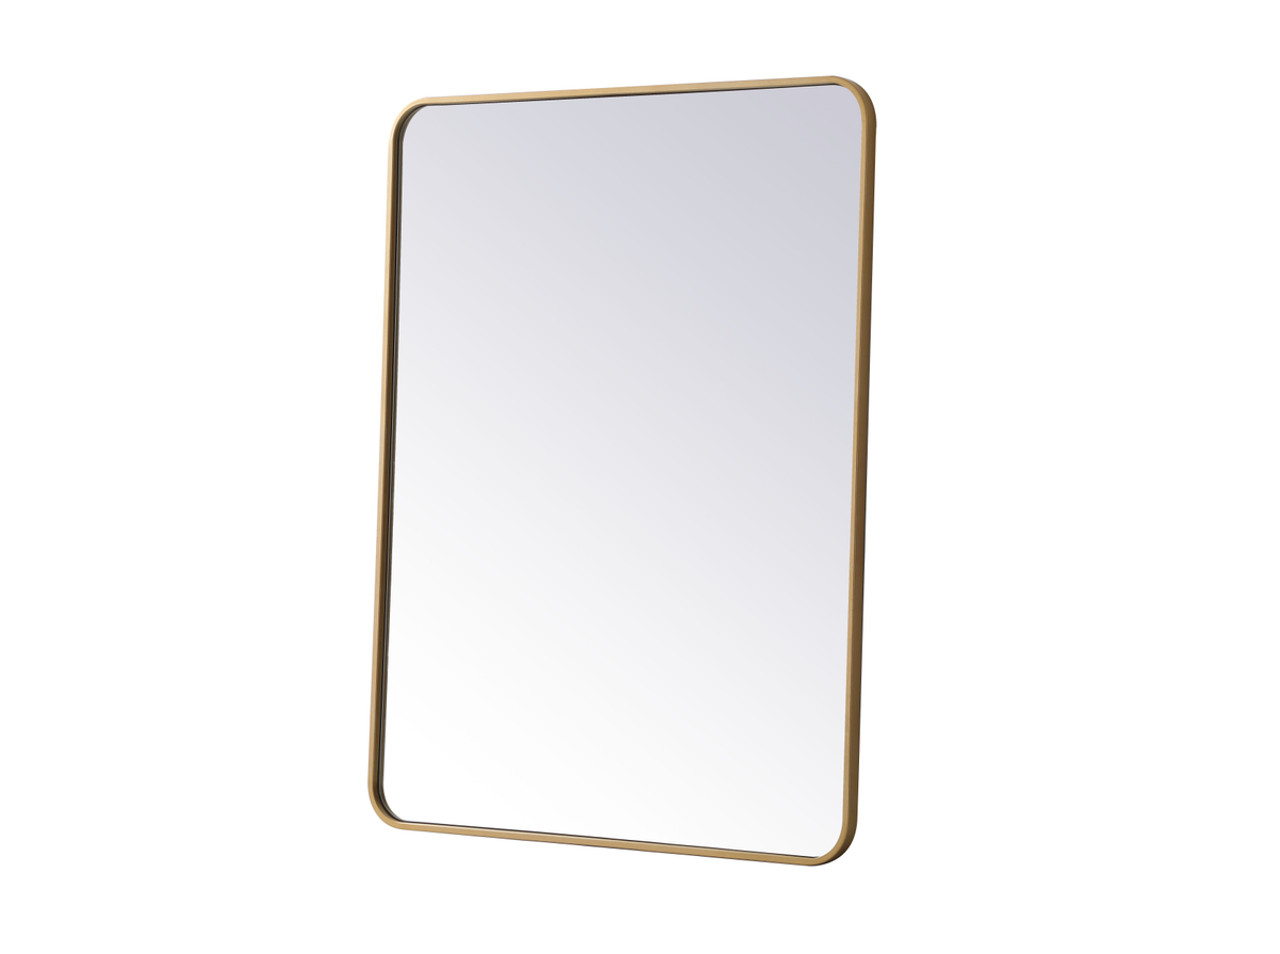 Elegant Decor MR803040BR Soft corner metal rectangular mirror 30x40 inch in Brass